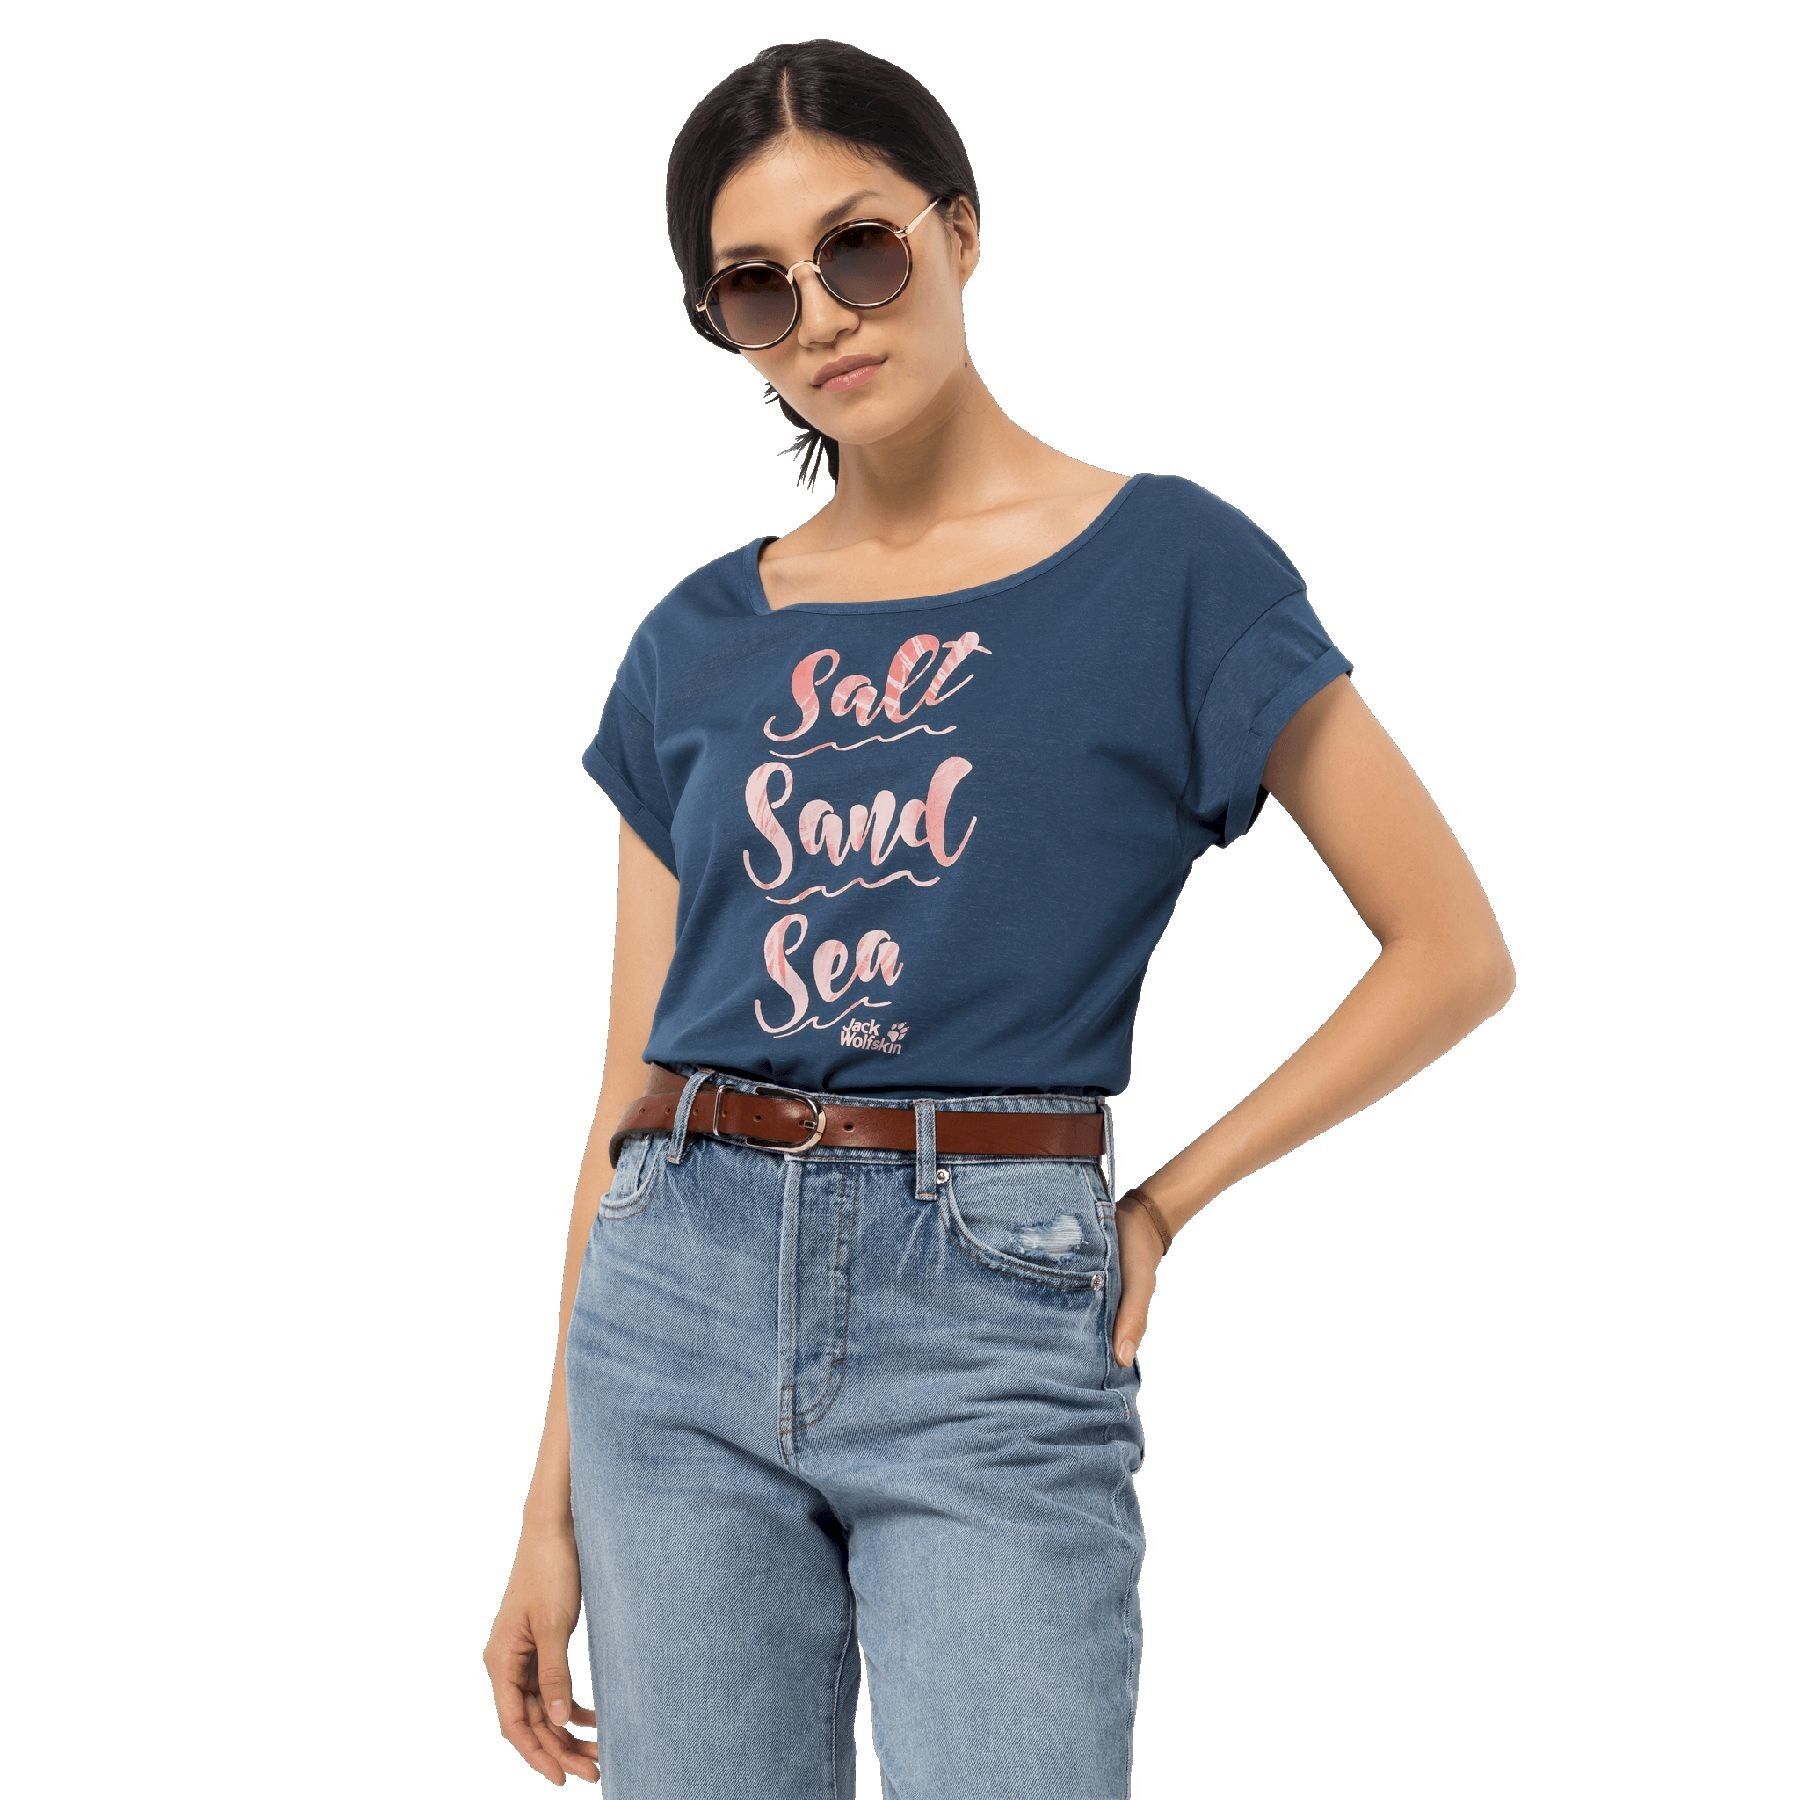 Jack Wolfskin Salt Sand Sea T - T-shirt - Women's